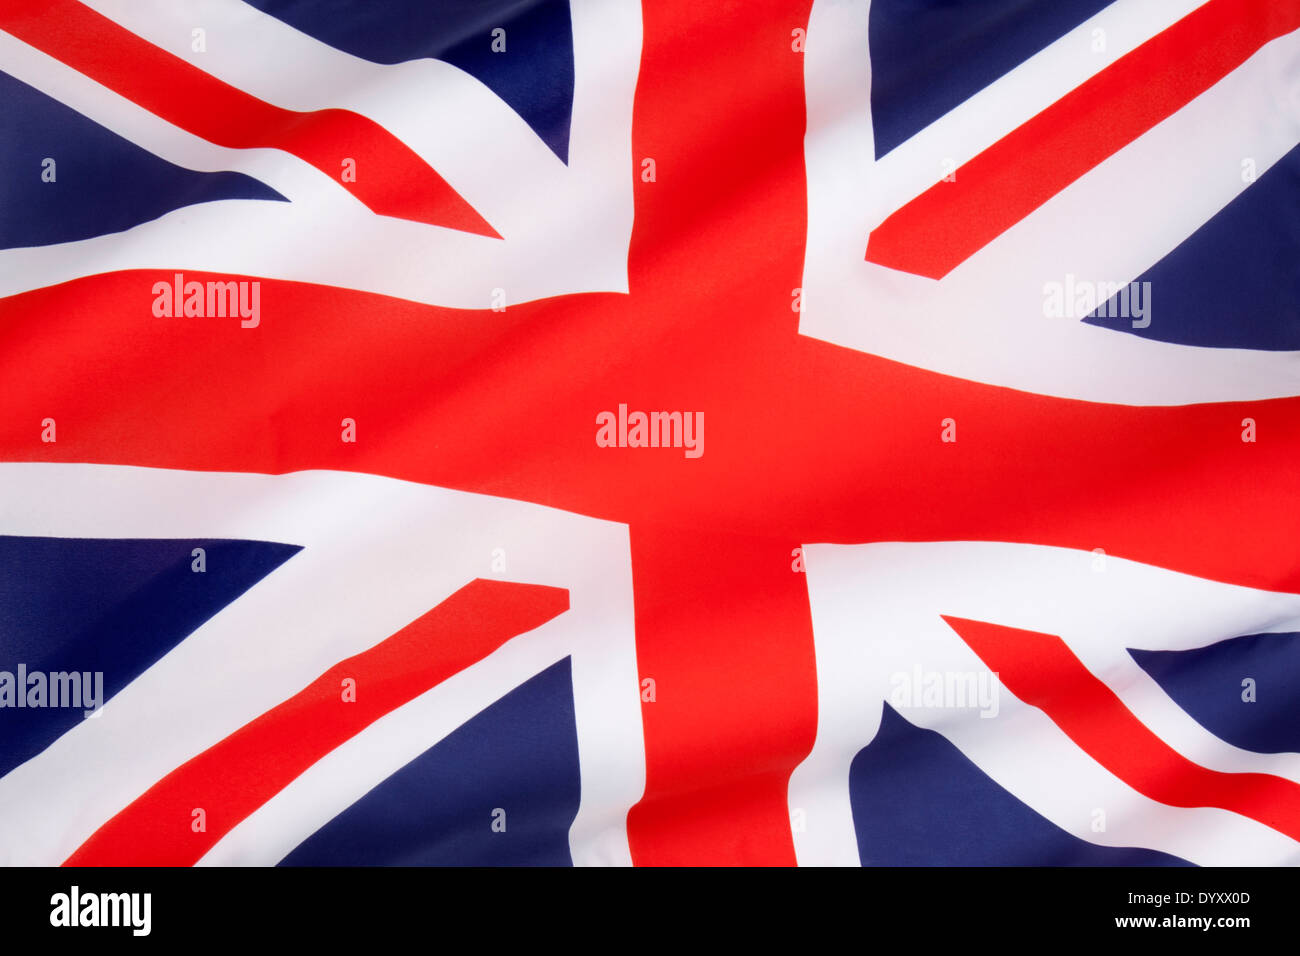 La bandera del Reino Unido de Gran Bretaña e Irlanda del Norte. Foto de stock